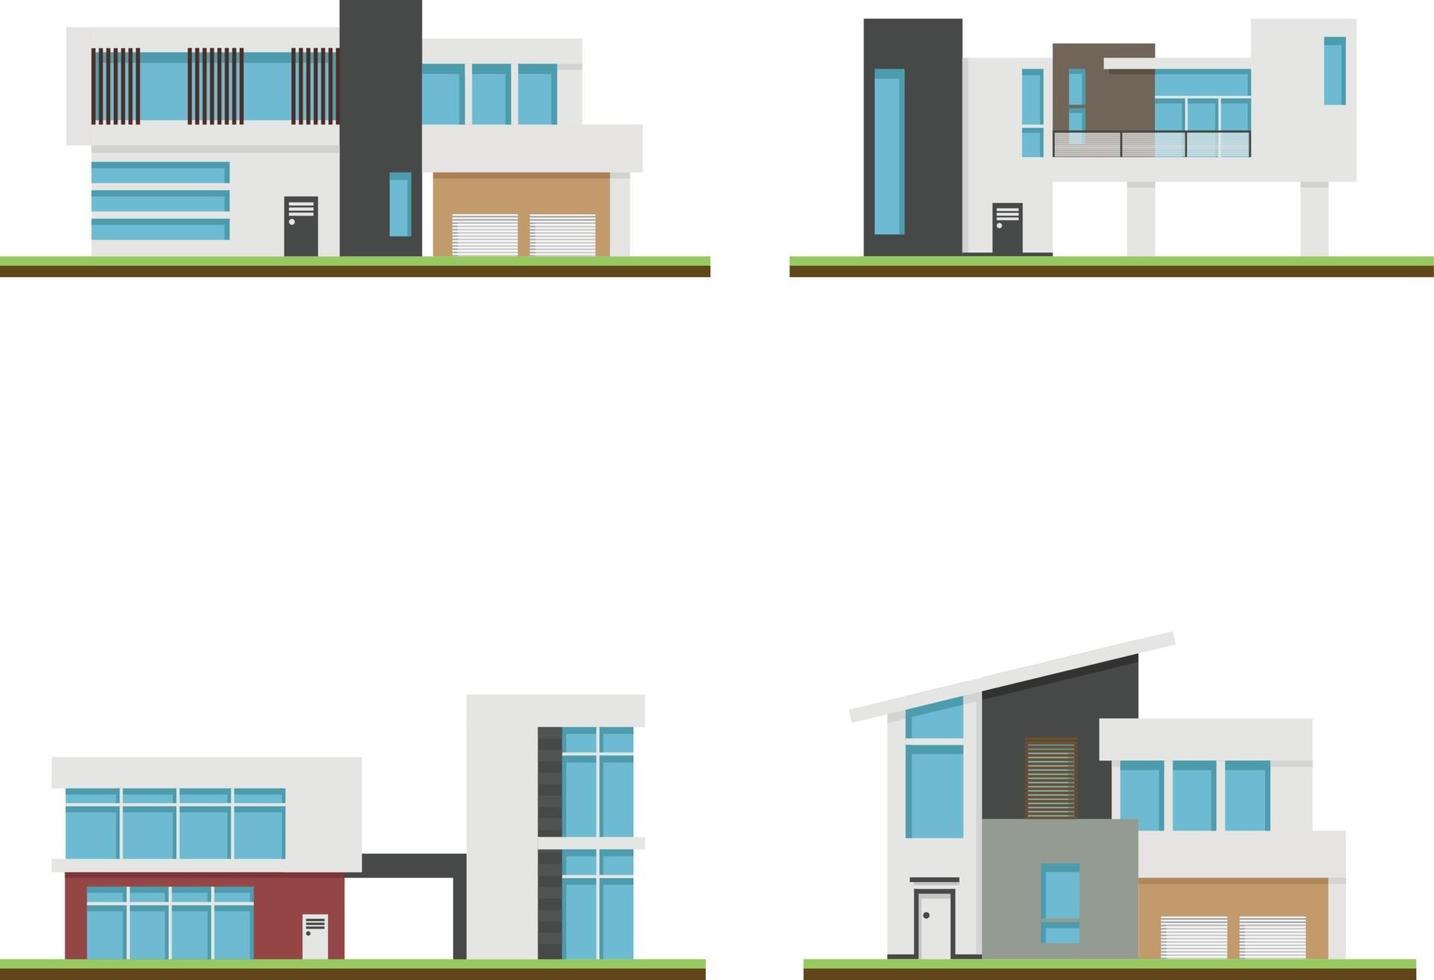 conjunto de casas y casas modernas, construcción y arquitectura modernas. vector